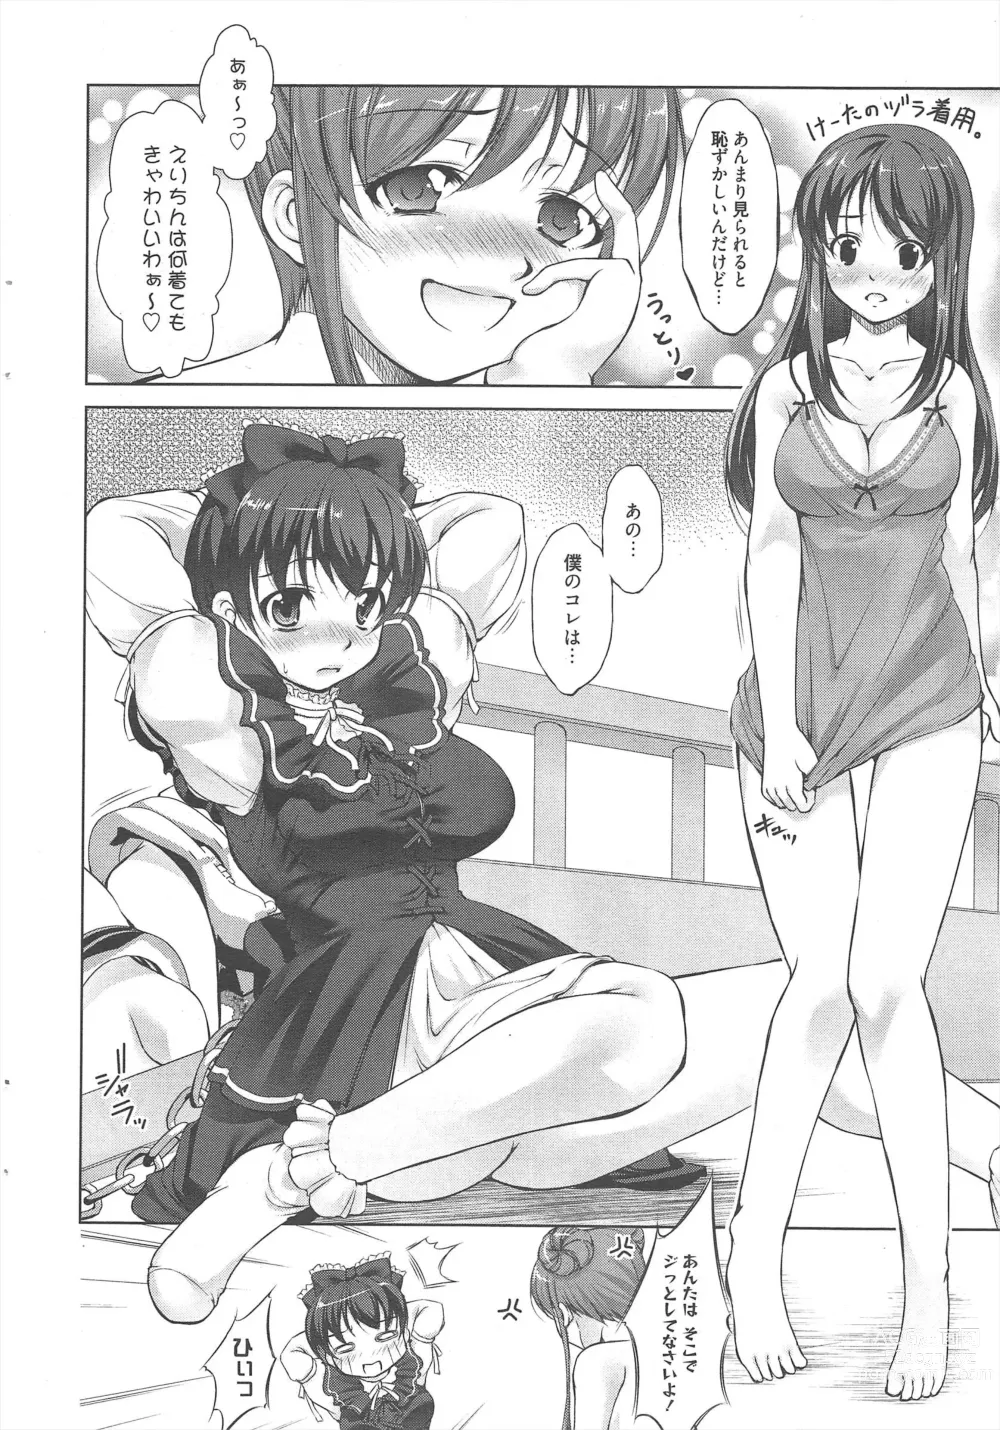 Page 12 of manga Manga Bangaichi 2013-01